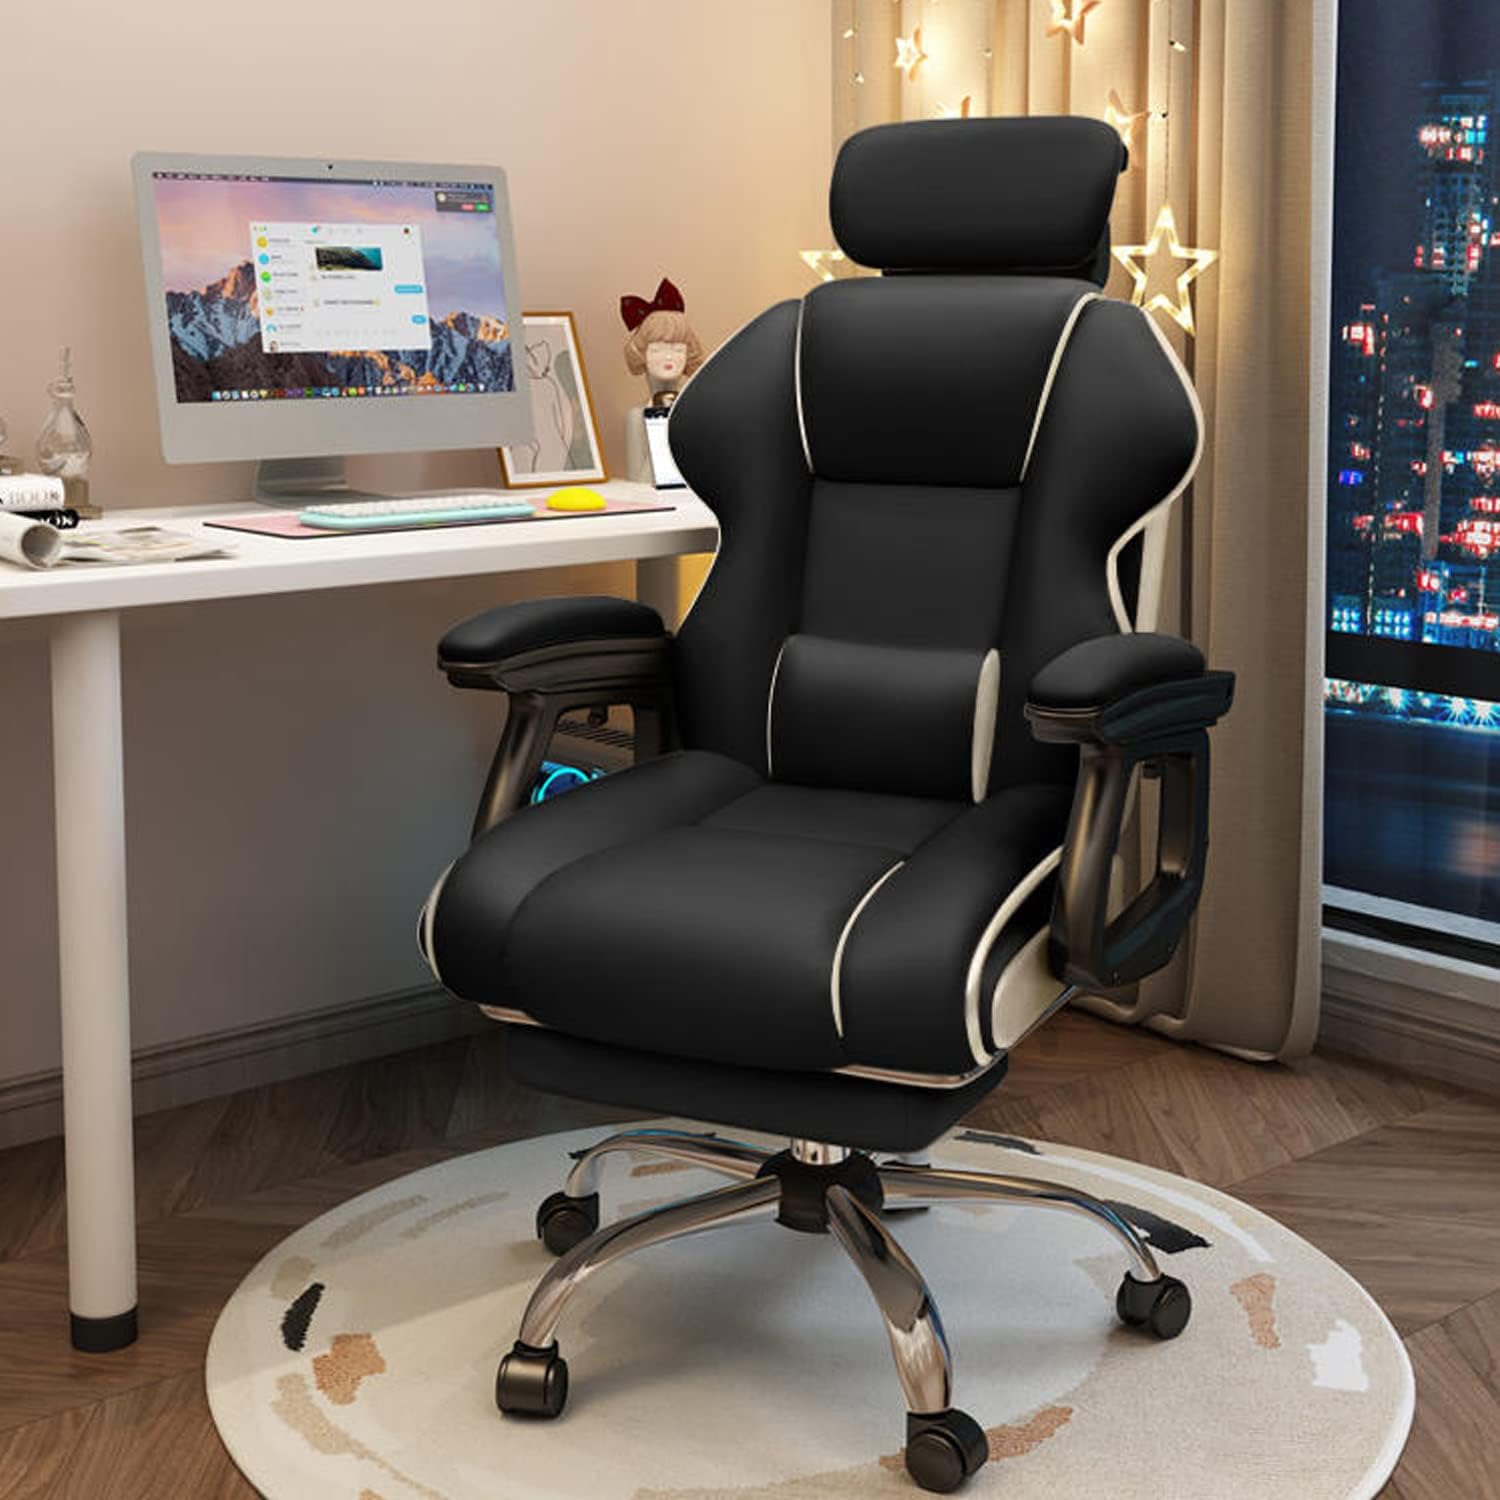 社長椅子 オフィスチェア 360度回転昇降機能 リクライニングチェア 肉